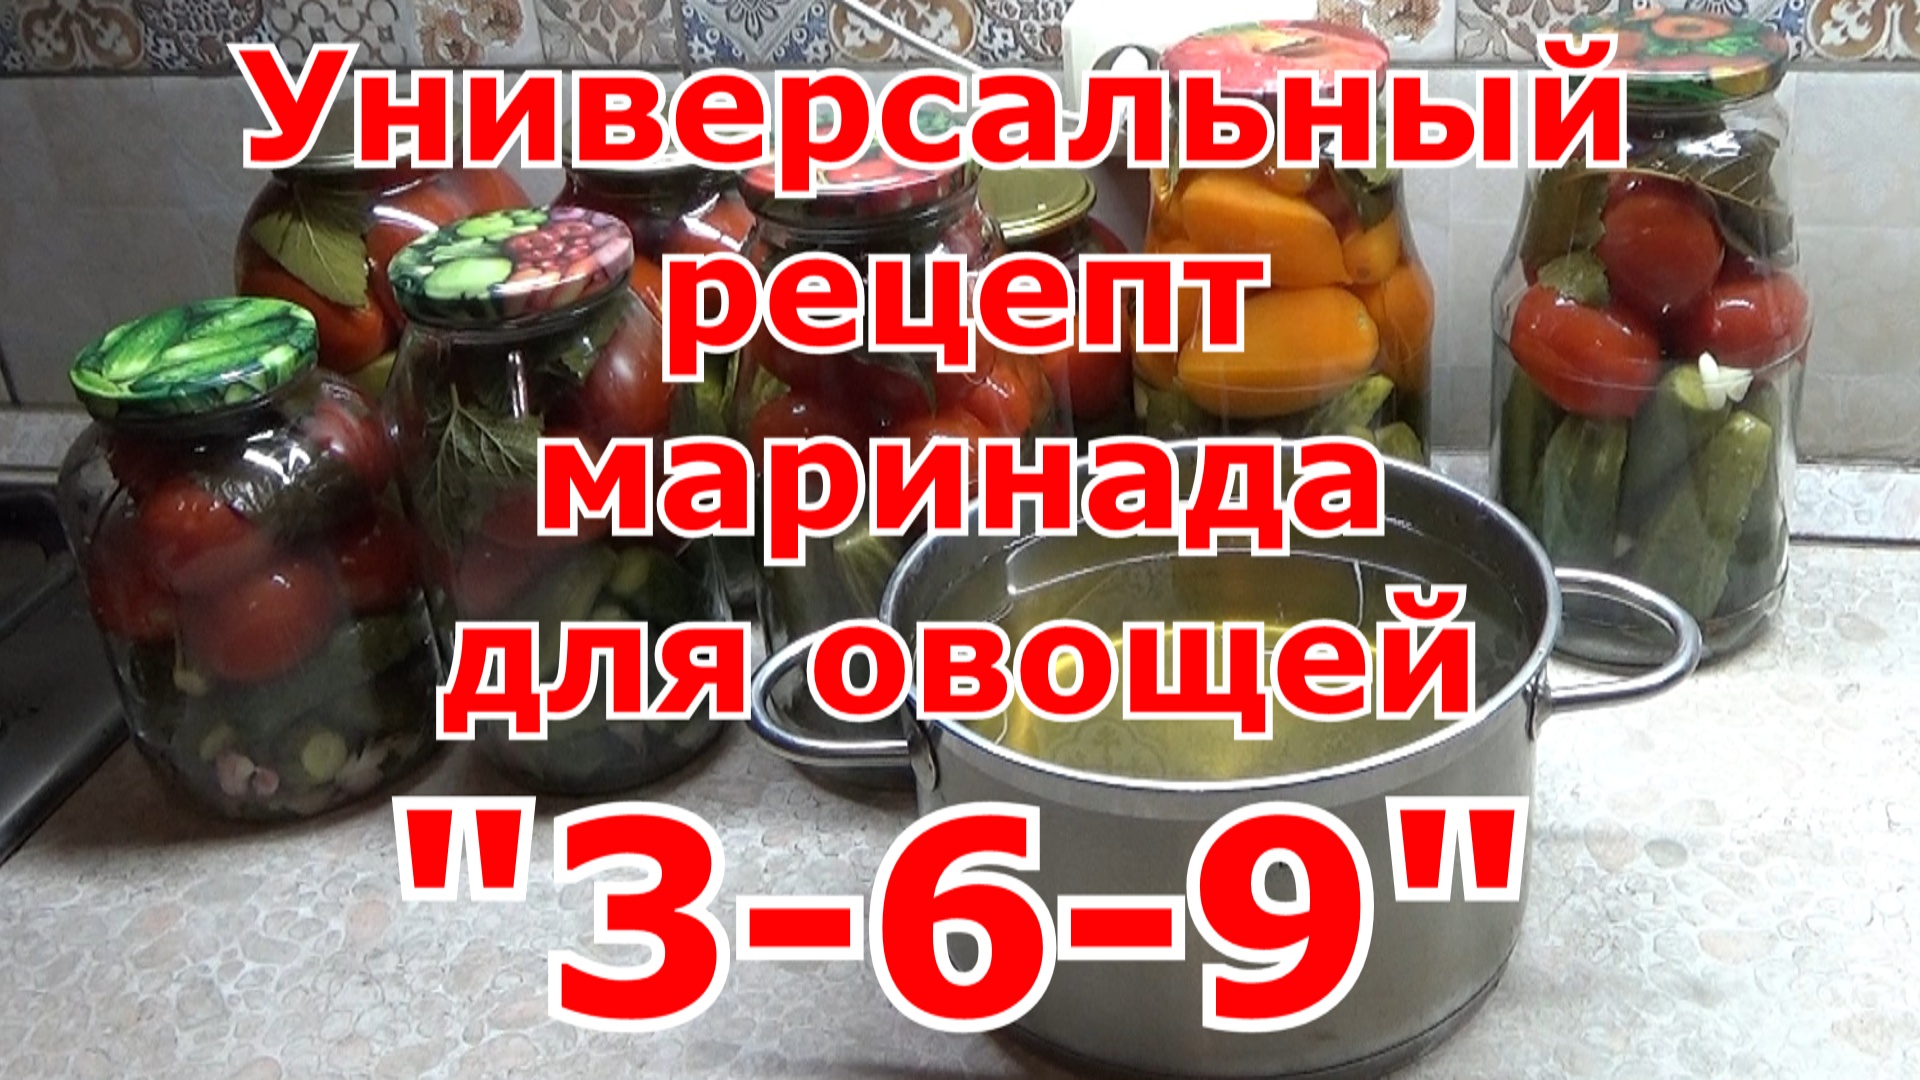 Рецепт универсального маринада для огурцов, томатов и других овощей _3_6_9_, который сложно забыть.